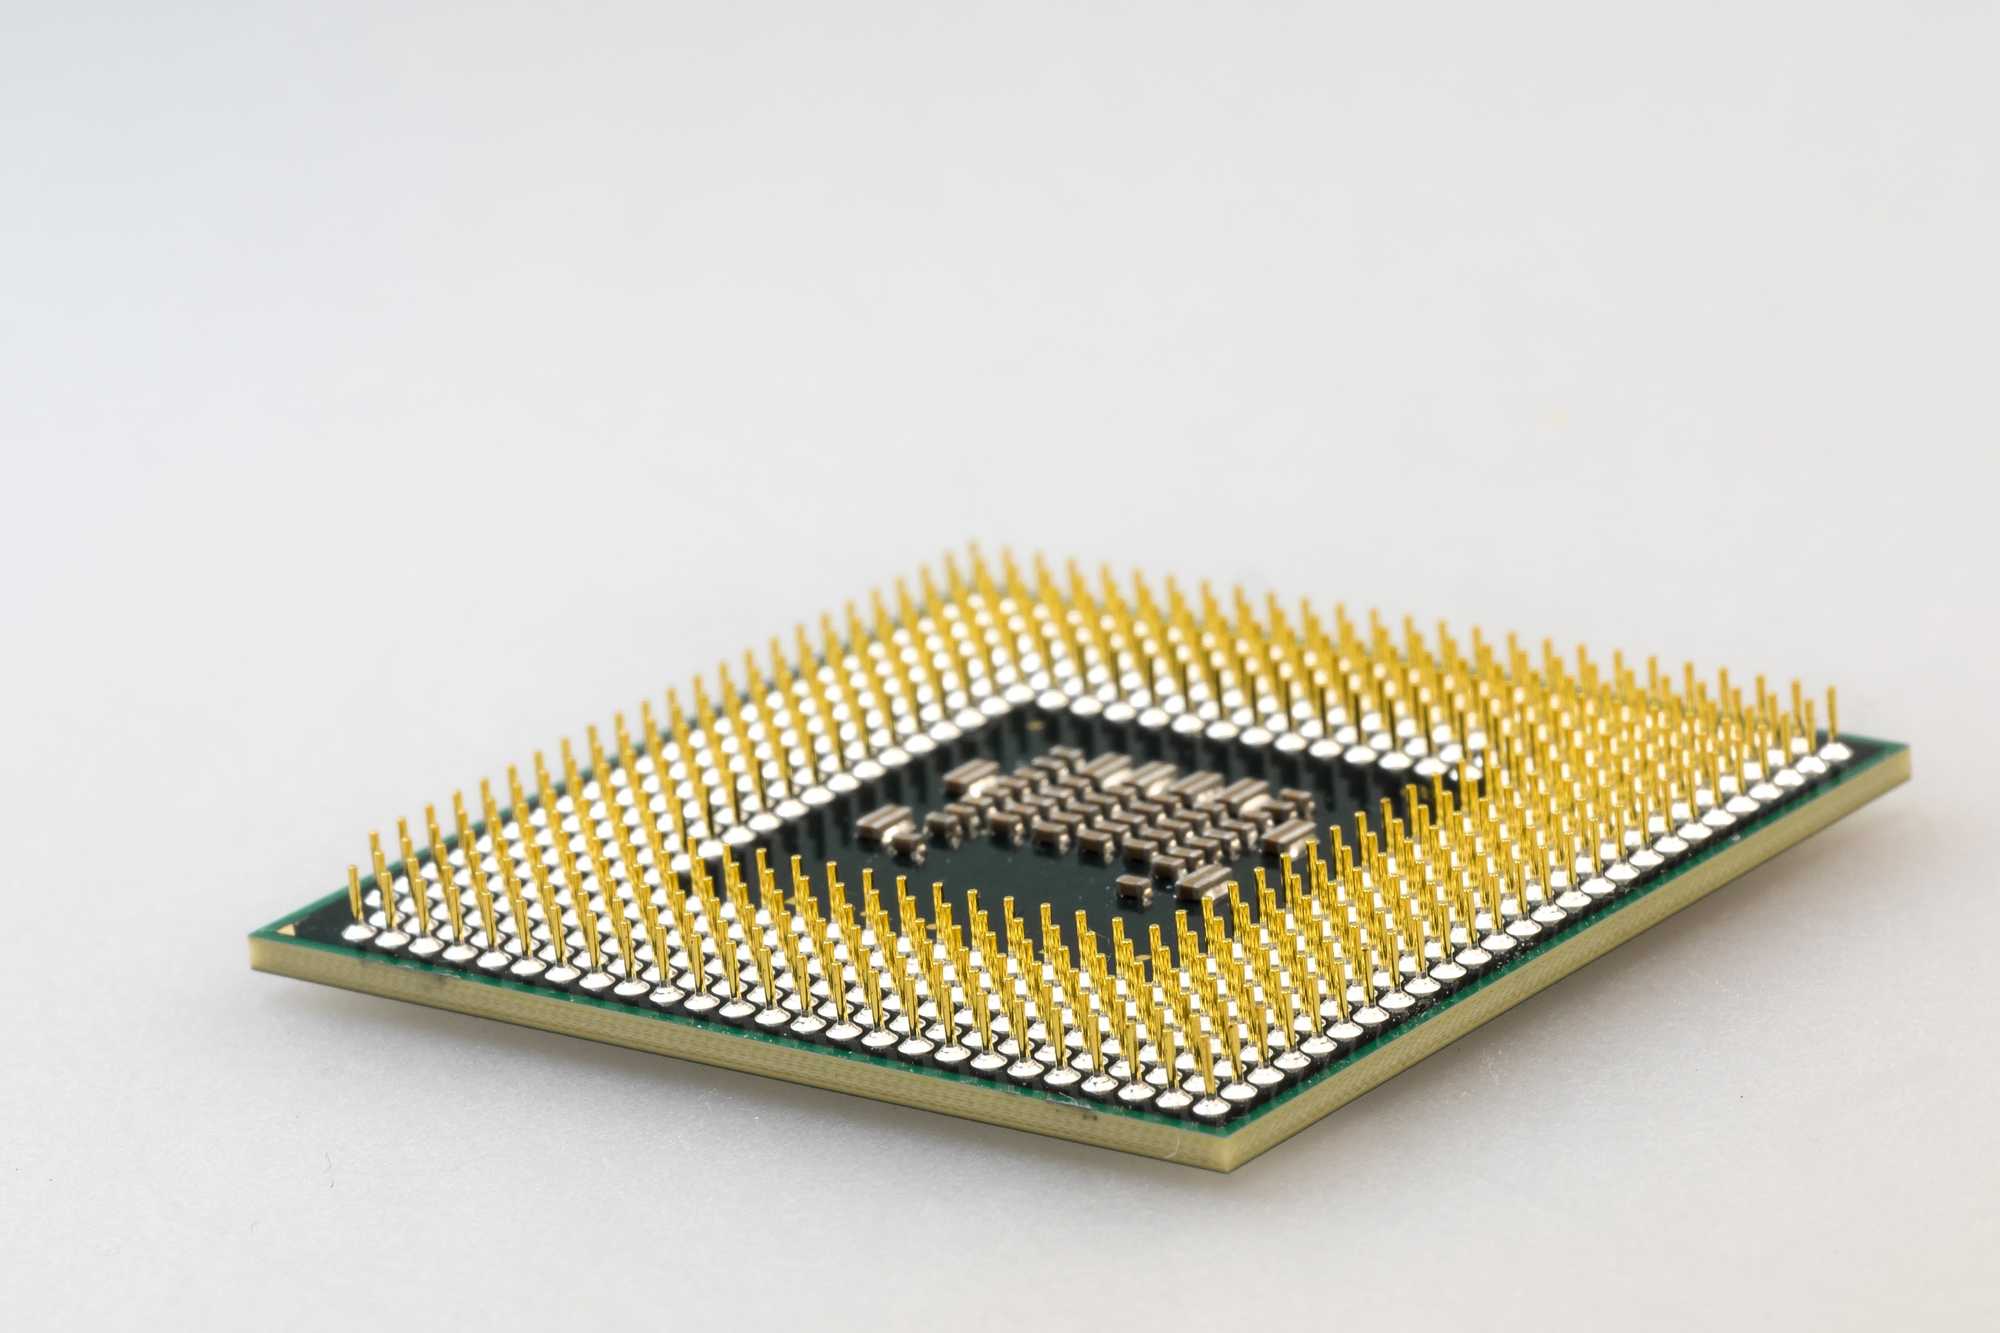 Neue Xeon-Prozessor-Serie von Intel für künstliche Intelligenz